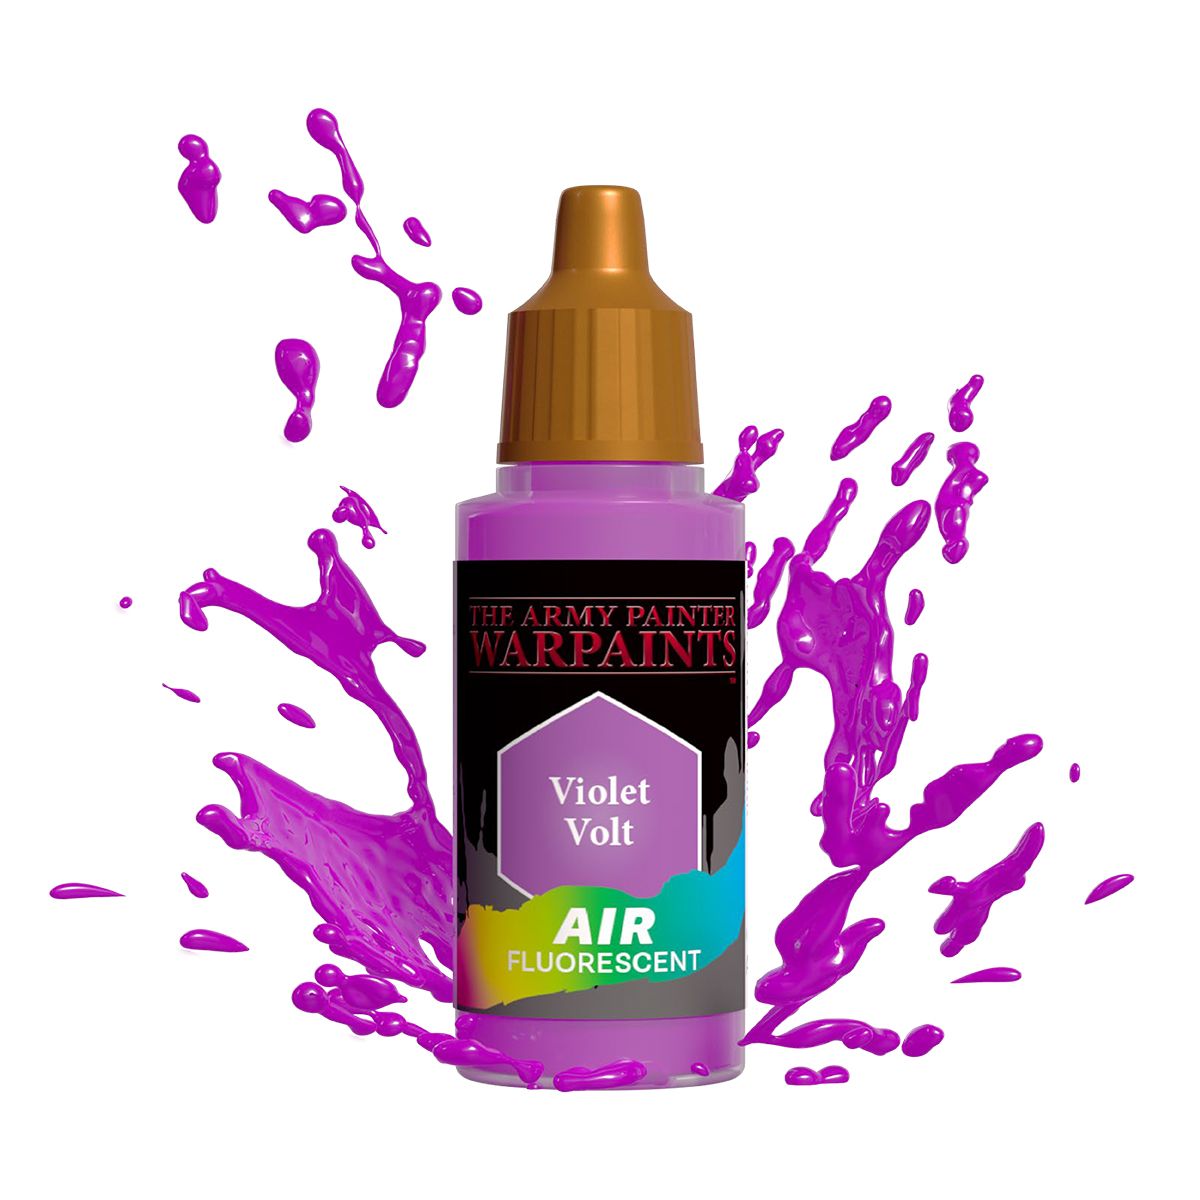 Army Painter Warpaints Air Fluorescent: Violet Volt 18ml